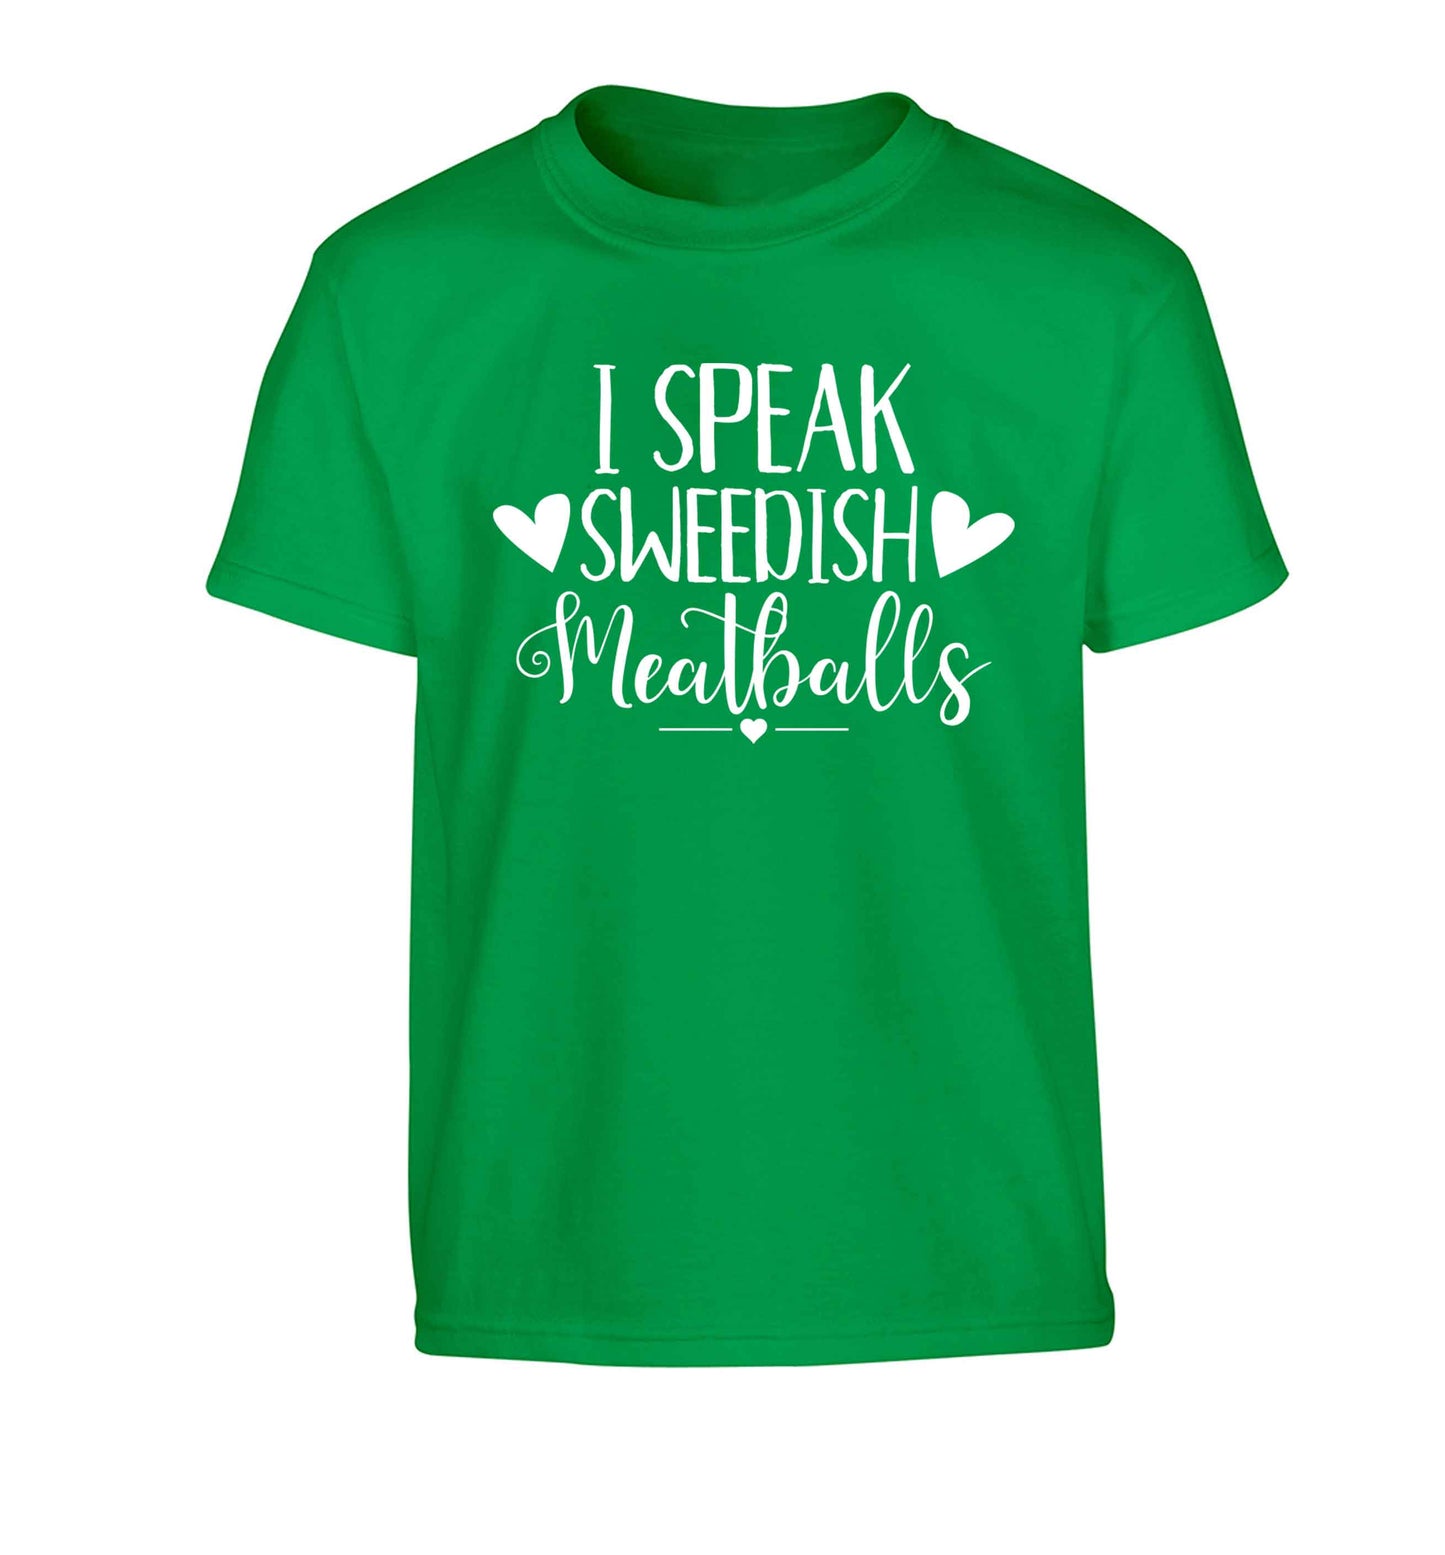 I speak sweedish...meatballs Children's green Tshirt 12-13 Years